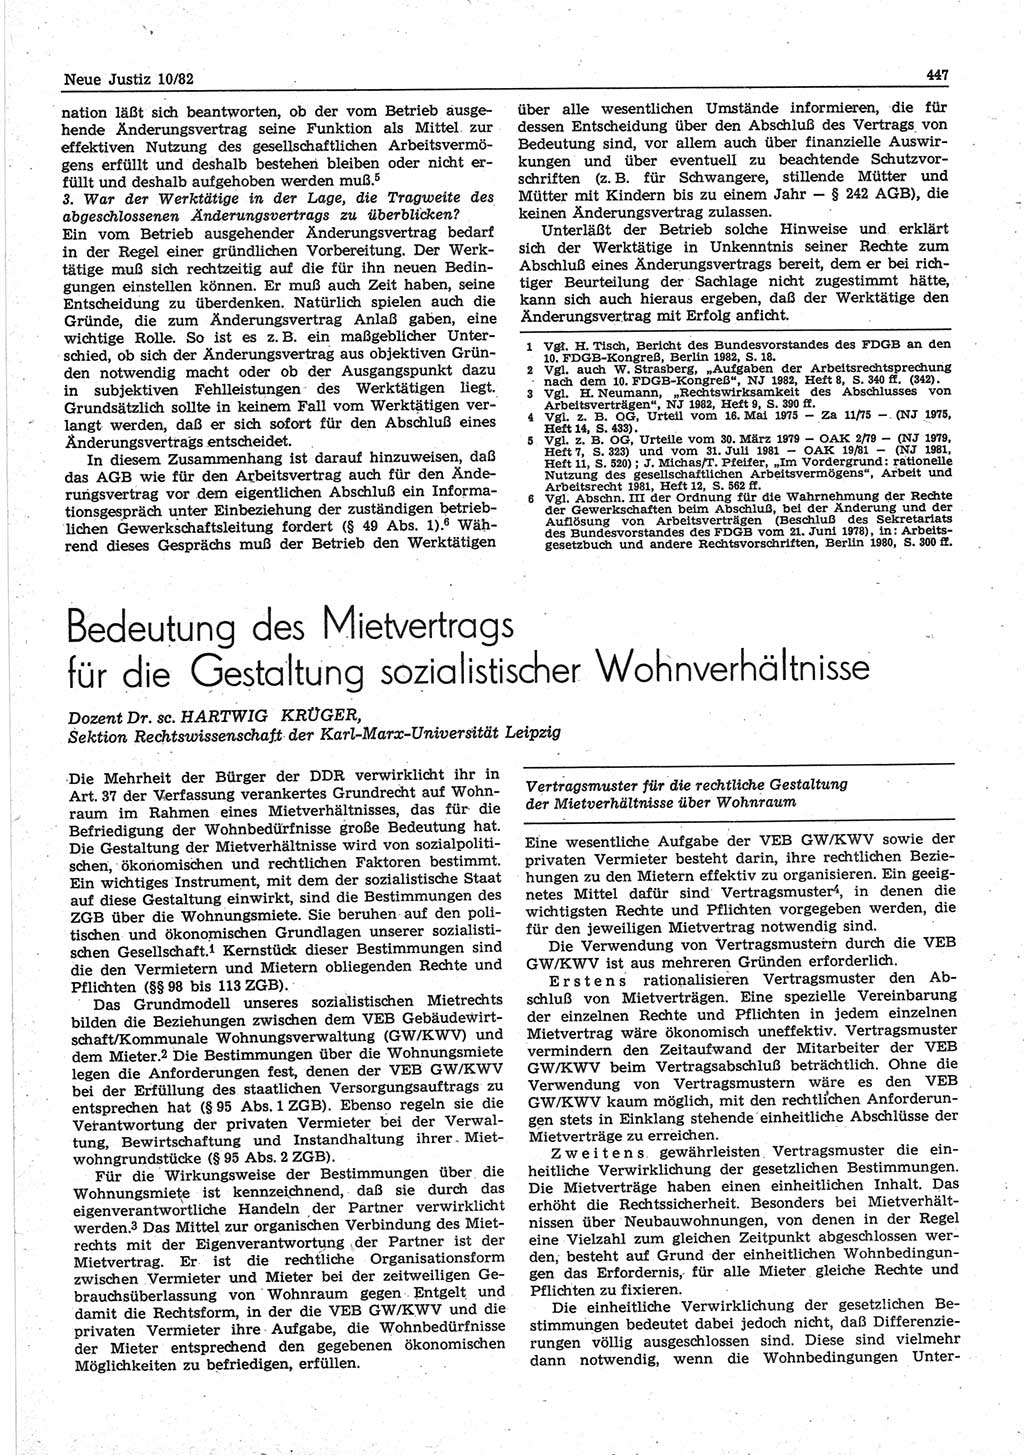 Neue Justiz (NJ), Zeitschrift für sozialistisches Recht und Gesetzlichkeit [Deutsche Demokratische Republik (DDR)], 36. Jahrgang 1982, Seite 447 (NJ DDR 1982, S. 447)